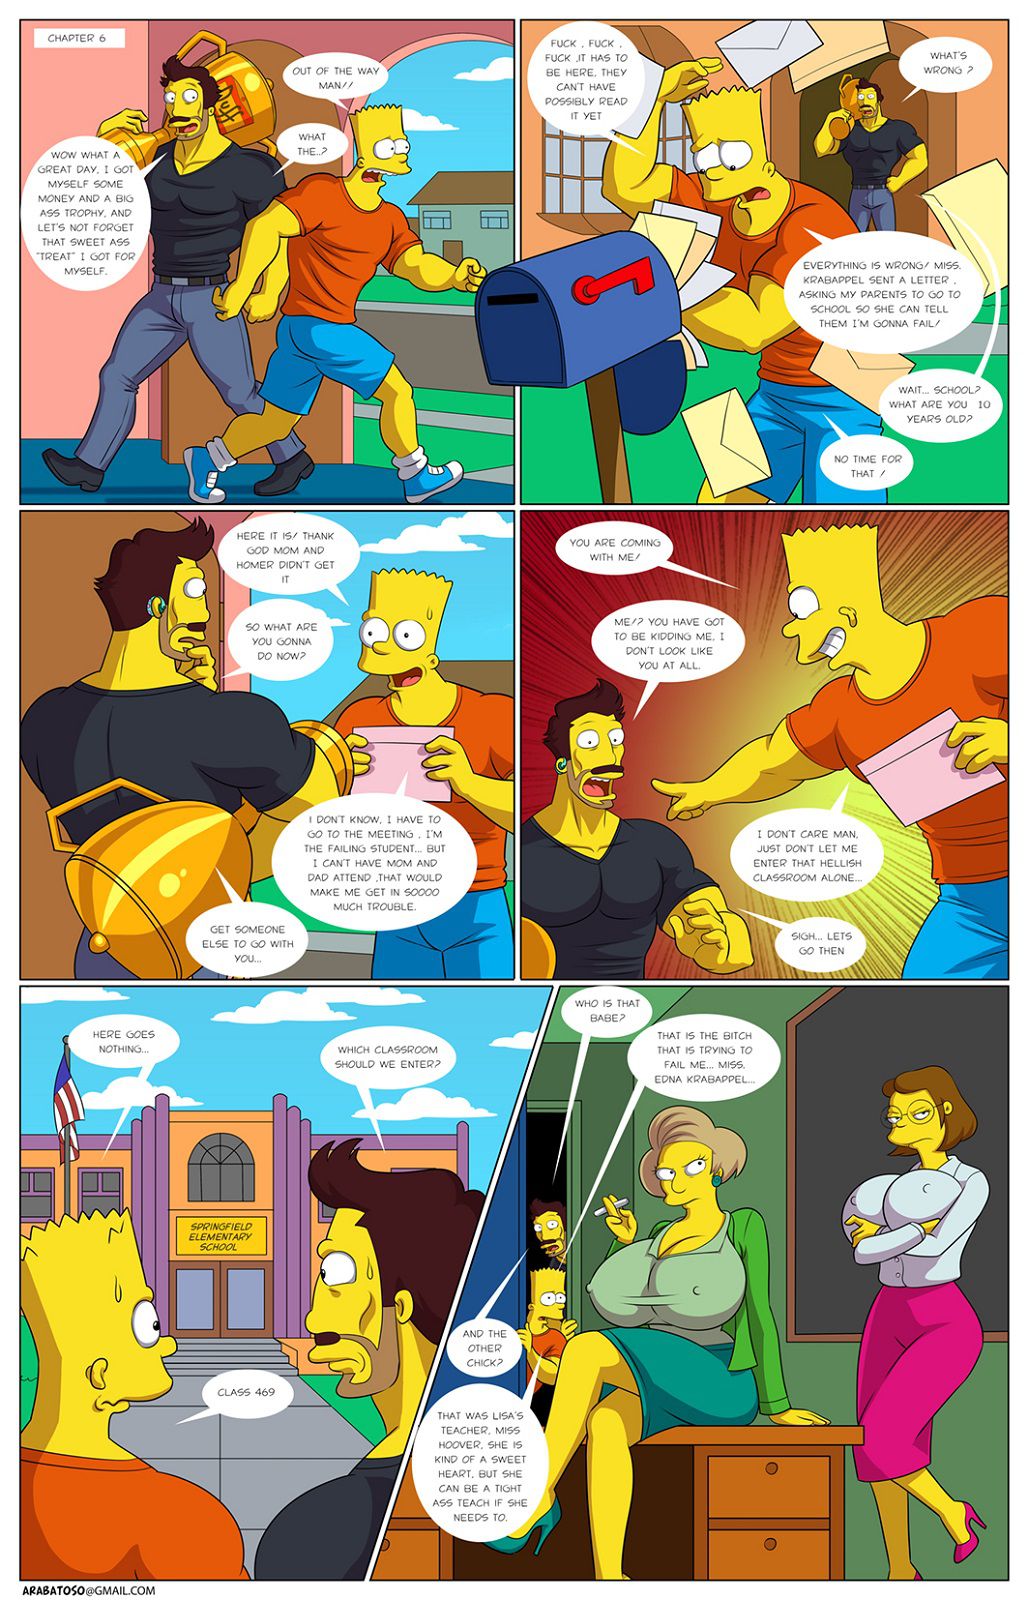 Darren's Adventure (The Simpsons) [Ongoing] 29